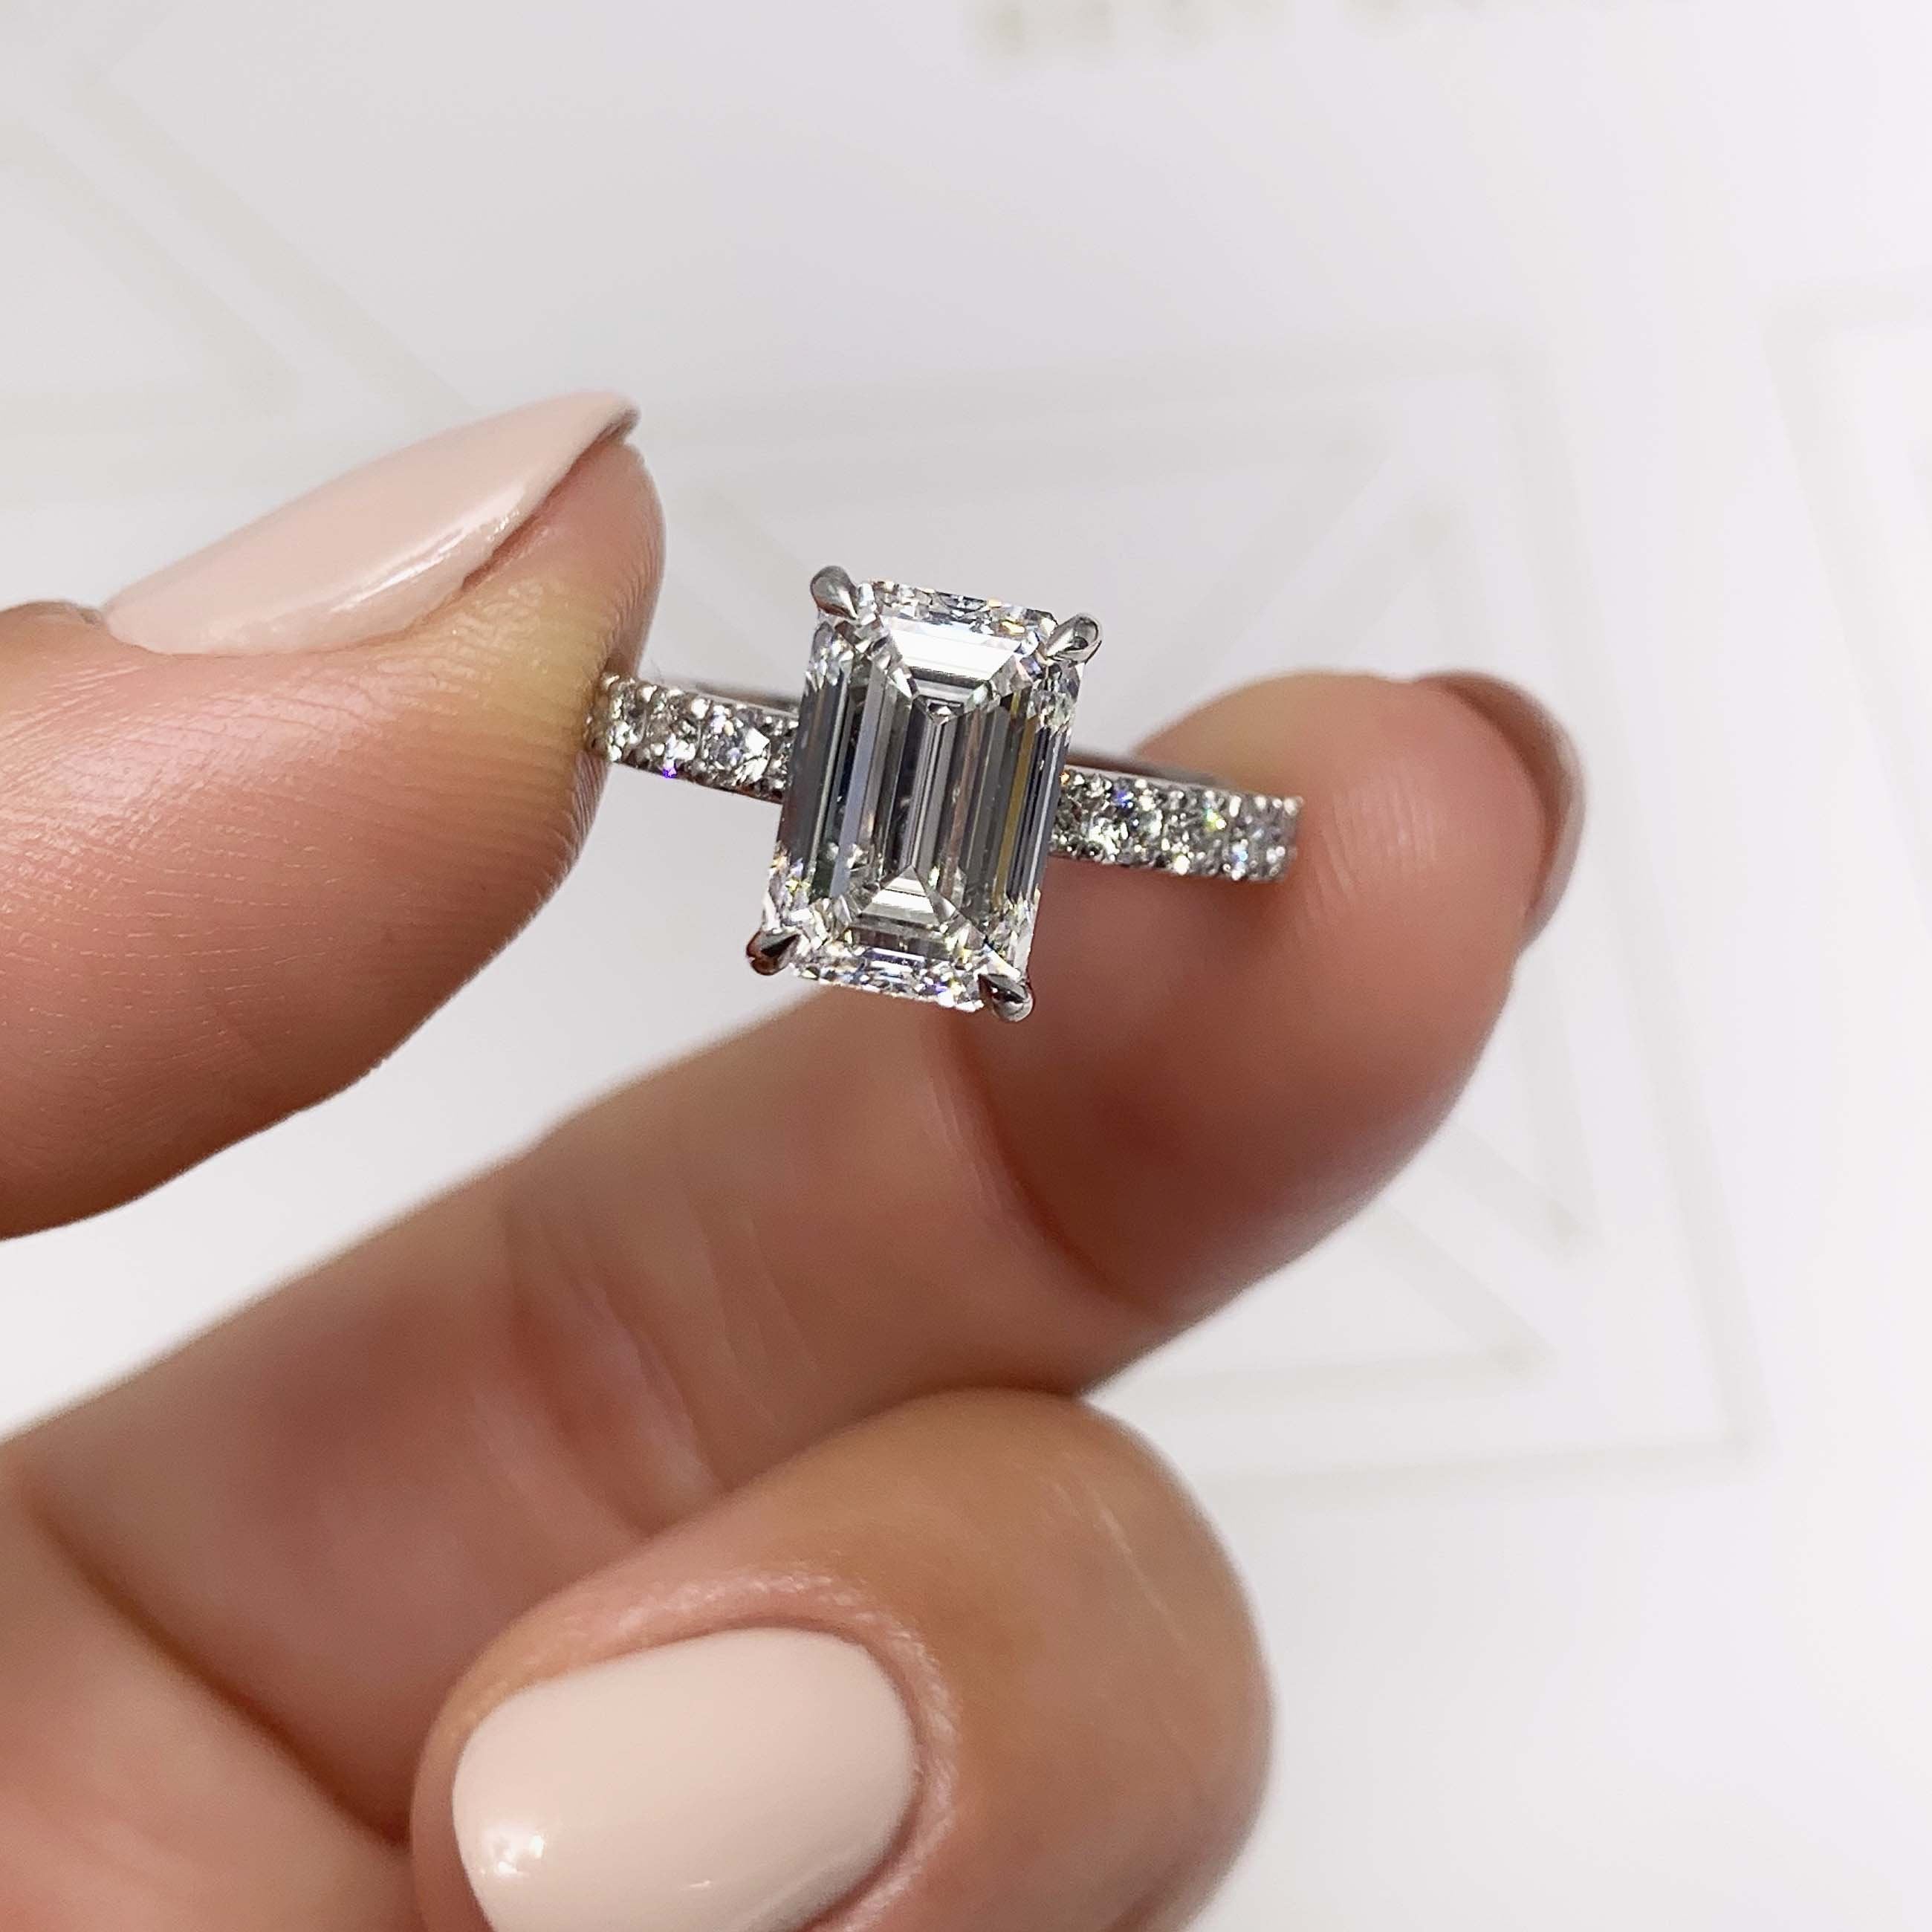 Royal Diamond Engagement Ring   (3.5 Carat) -Platinum